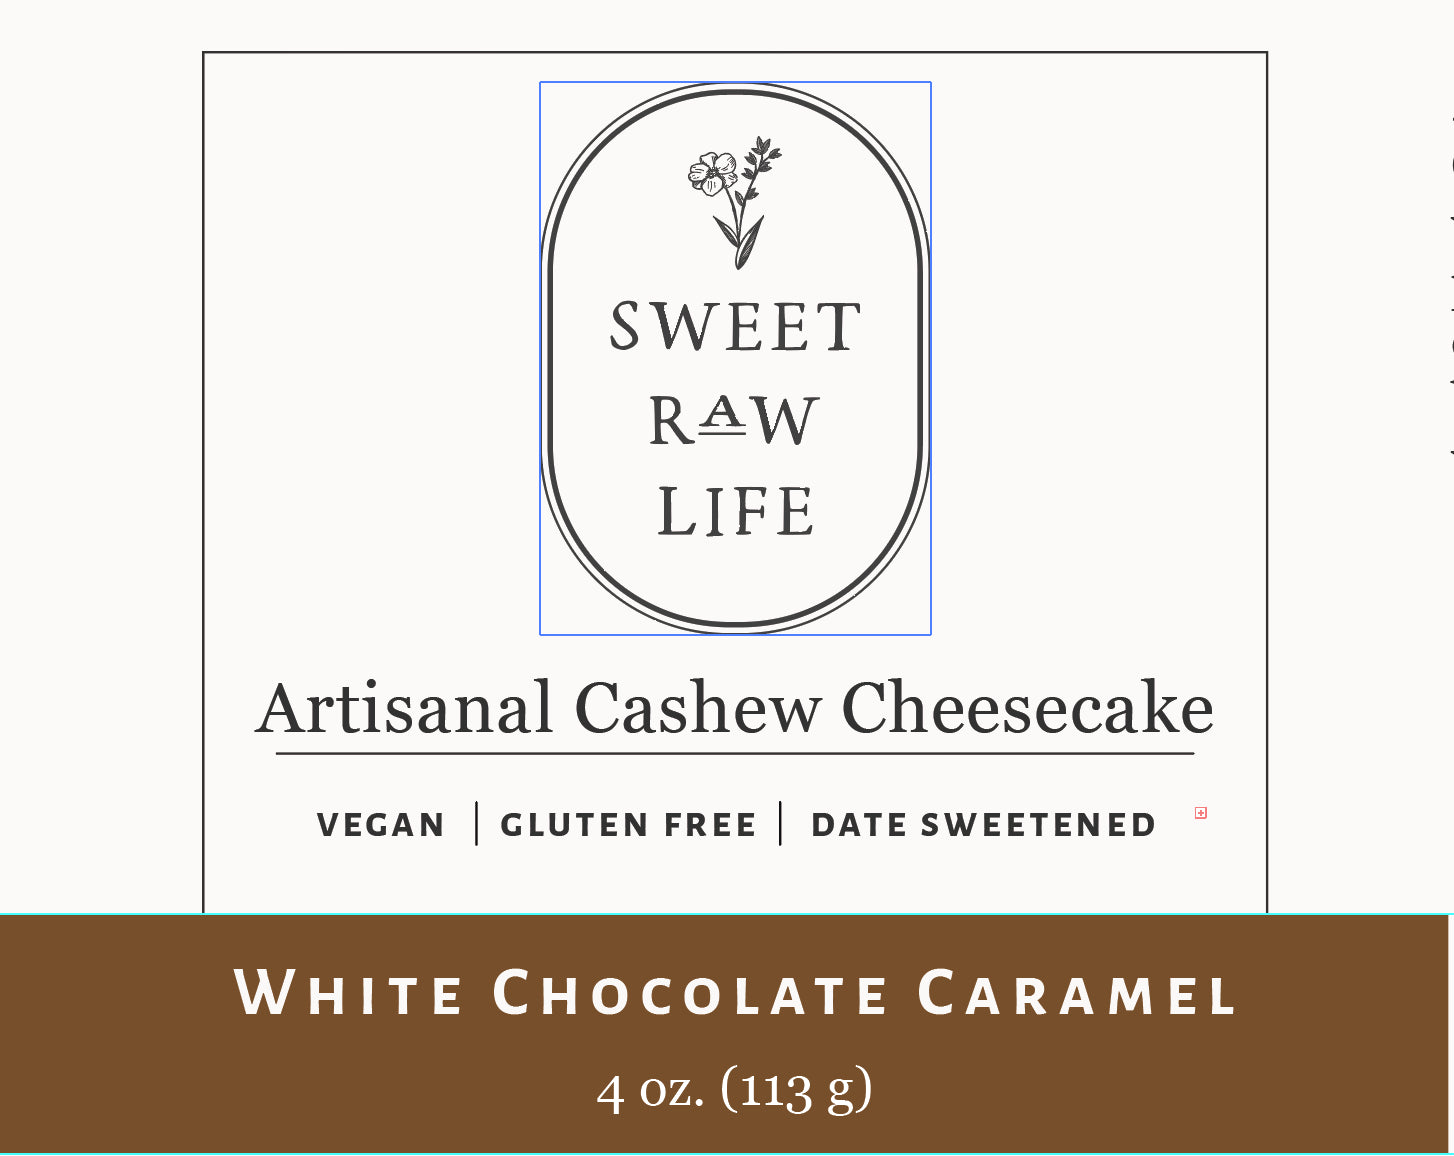 White chocolate caramel cheesecake